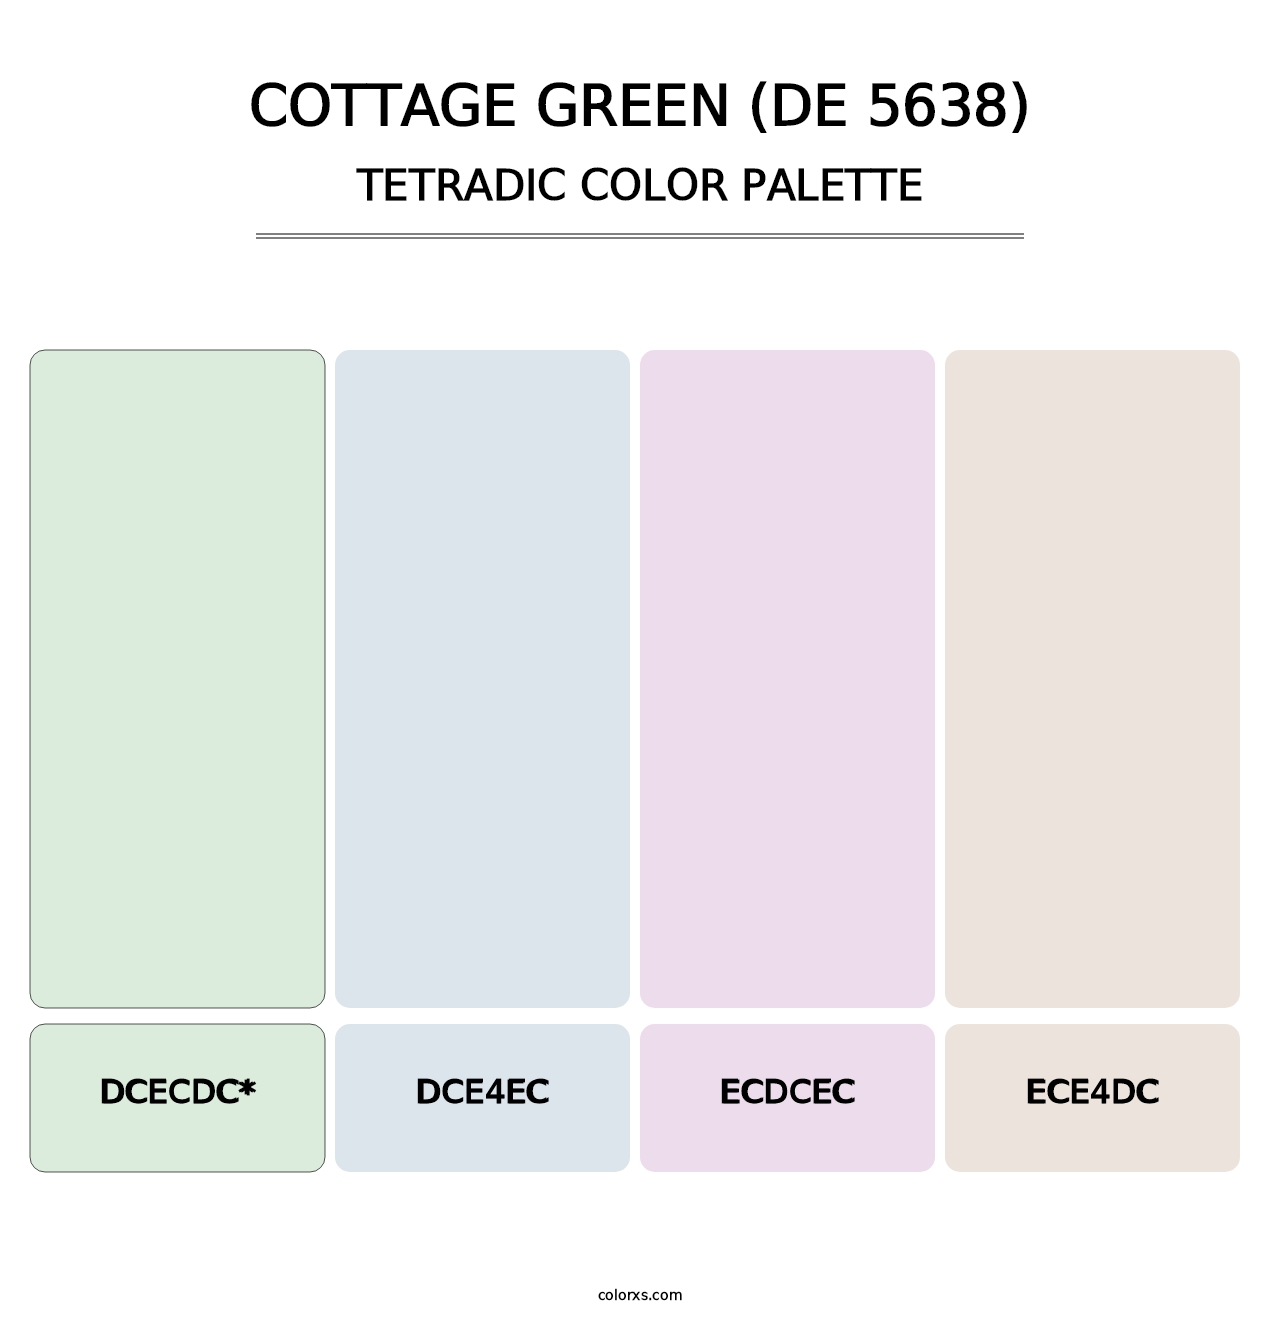 Cottage Green (DE 5638) - Tetradic Color Palette